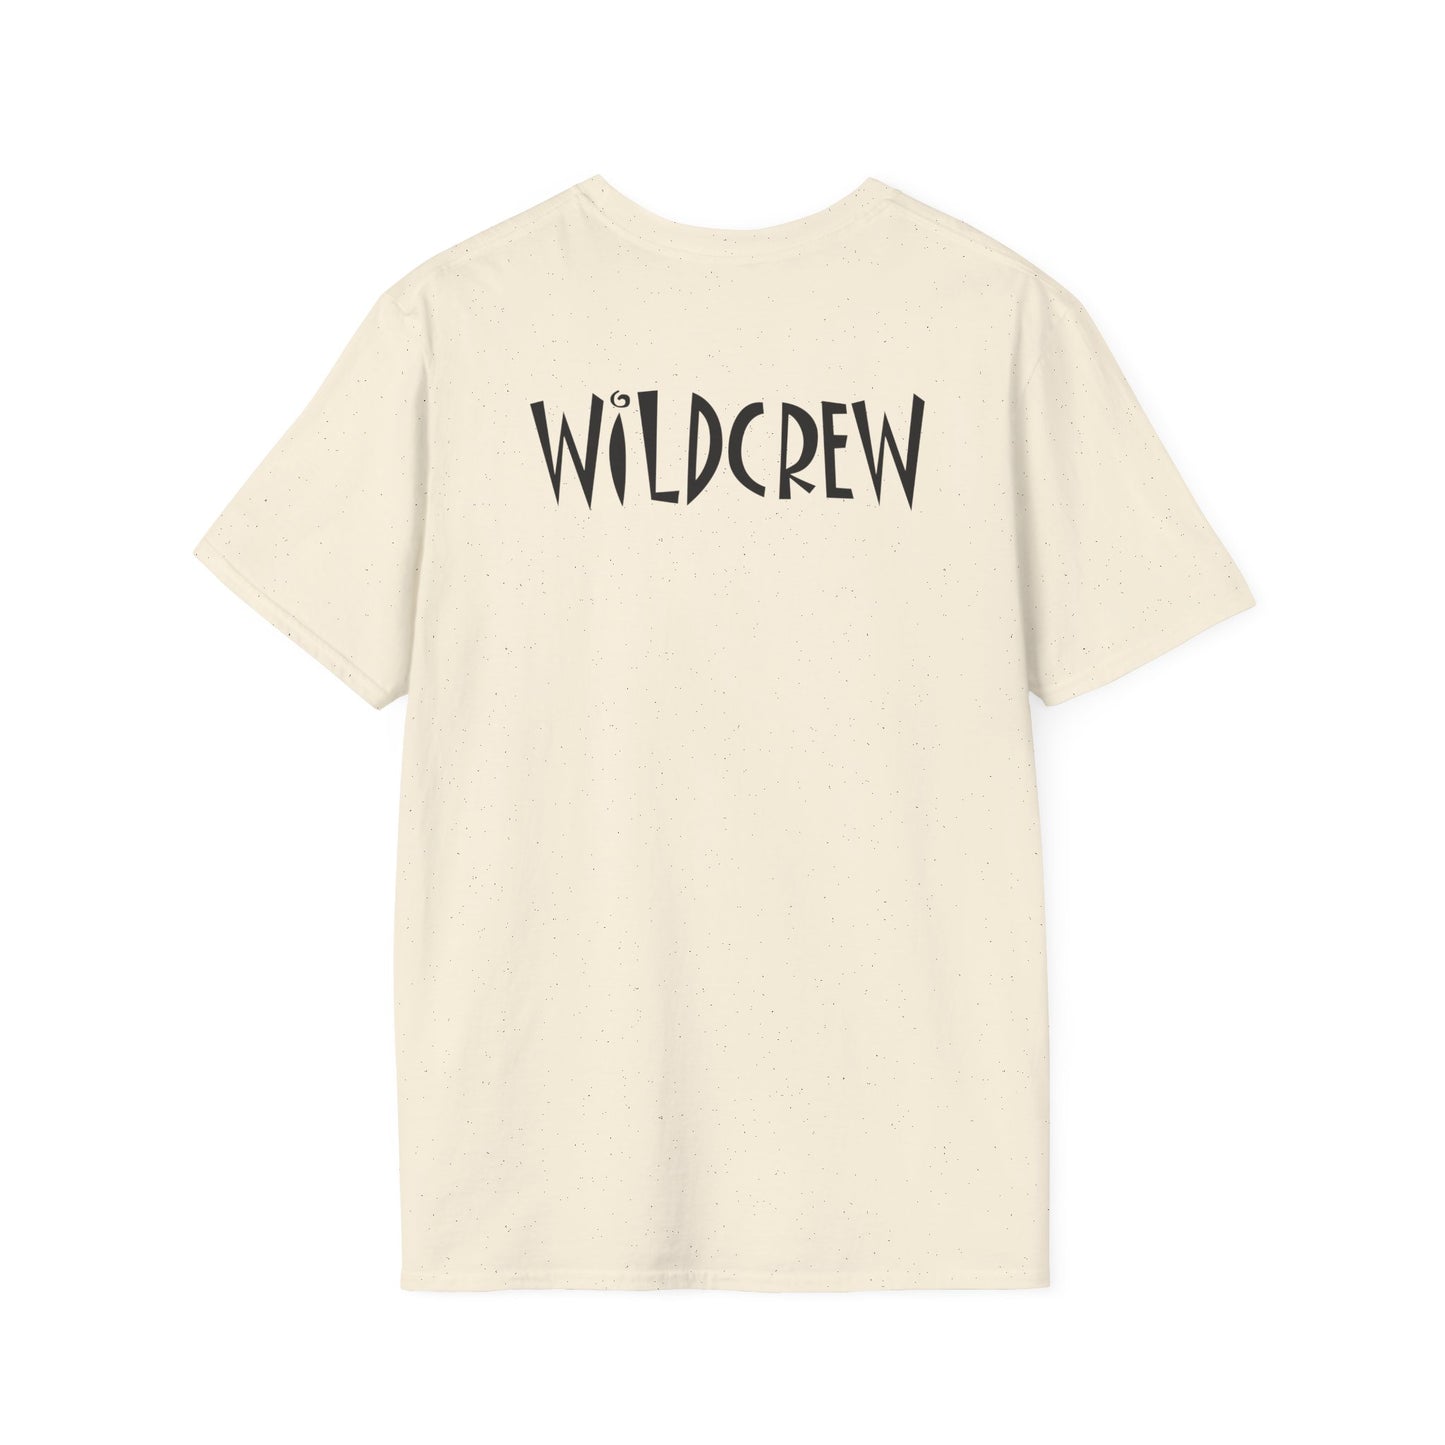 Wildwood Get Sauced T-shirt